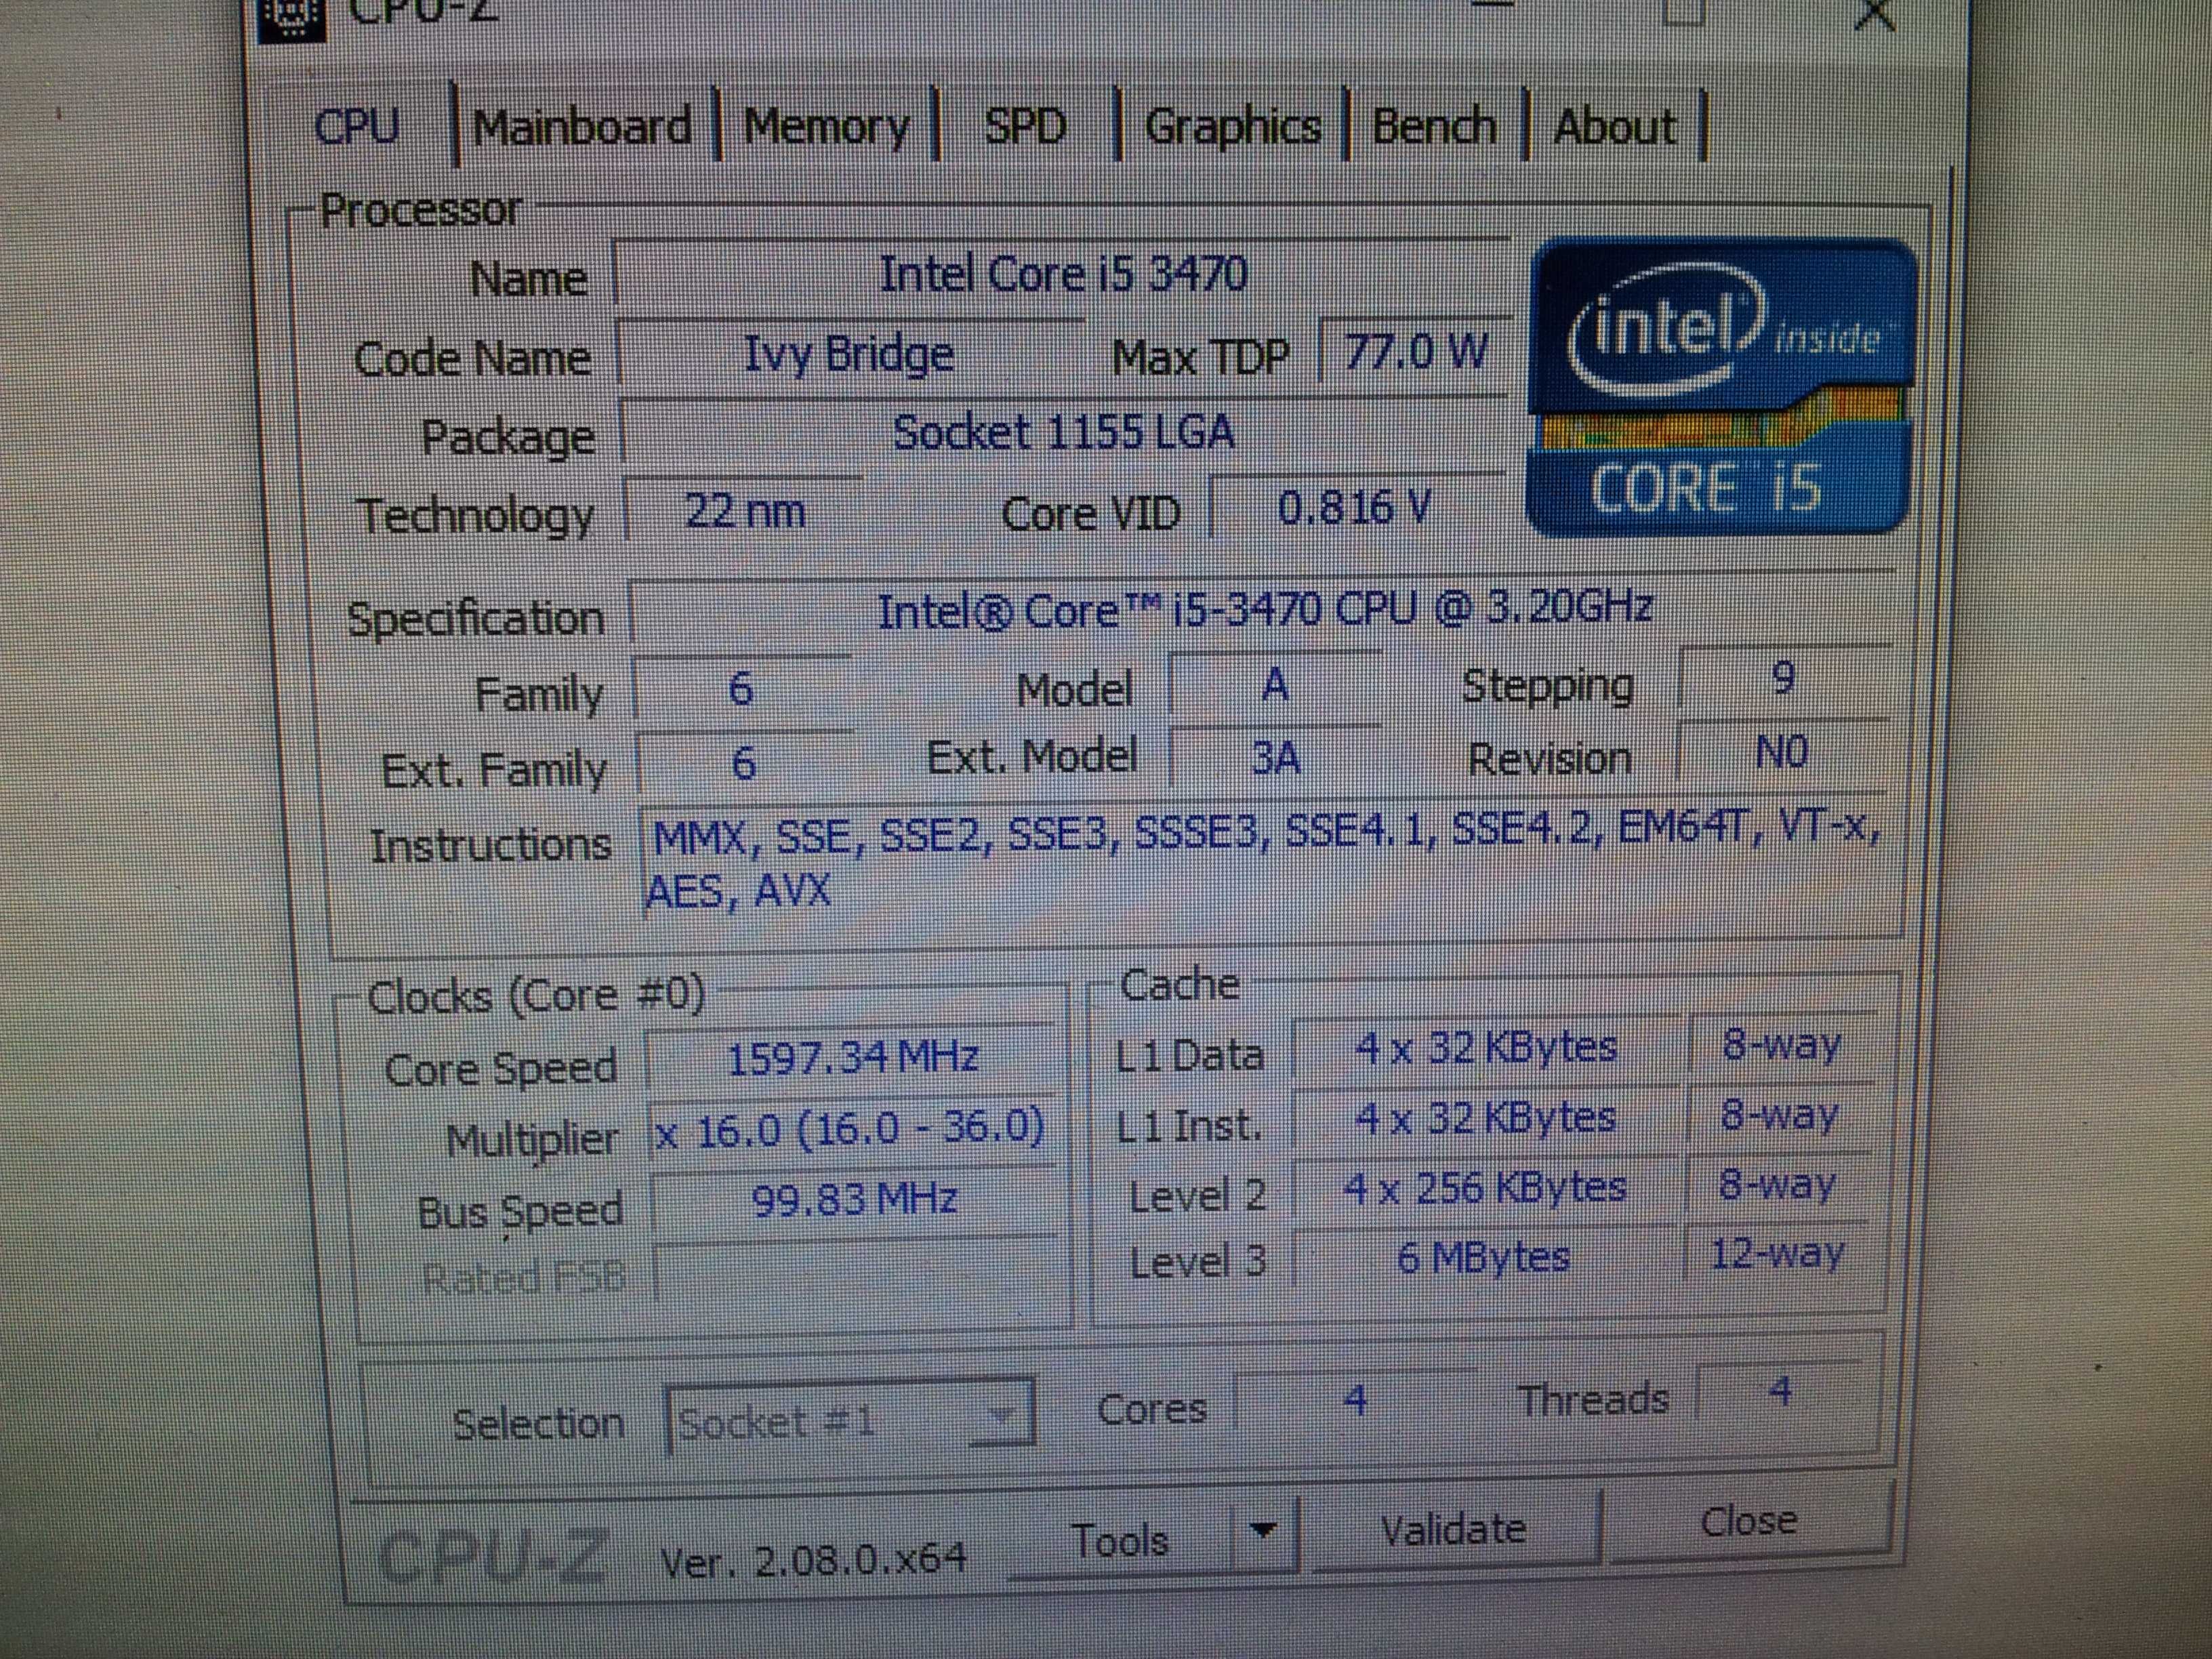 Марков FUJITSU Intel i5 3470 3.6ghz ram16gb SSD128GB hdd500GB vid 1gb